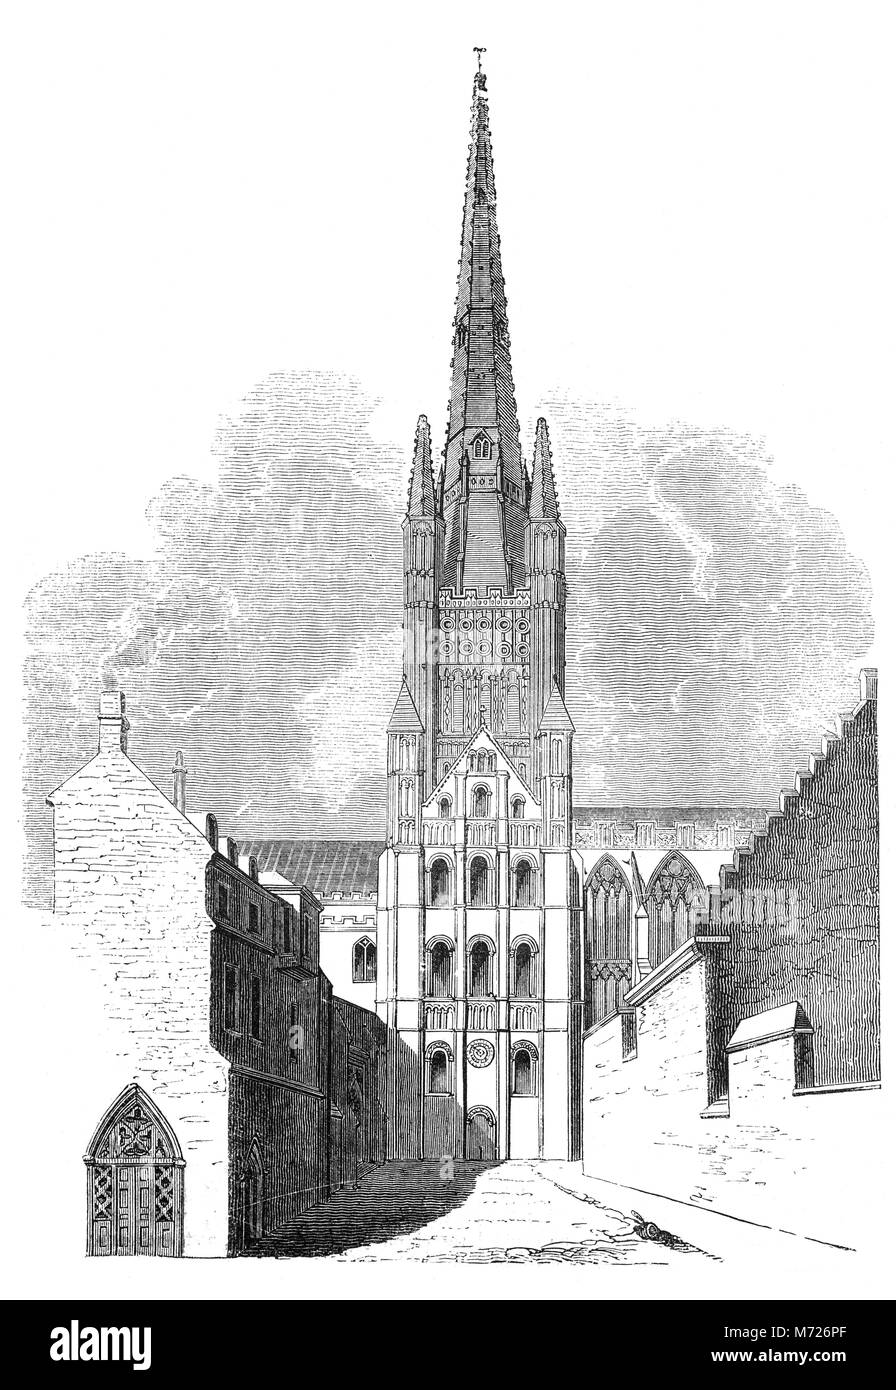 Die Struktur der Norwich Cathedral wird in erster Linie im normannischen Stil, die auf Geheiß von Herbert de Losinga, dem ersten Bischof von Norwich konstruiert worden. Bau begann im Jahre 1096 und die Kathedrale wurde zwischen 1121 und 1145 abgeschlossen. Grundriss der Kathedrale bleibt fast ausschließlich, wie es in Zeiten der Normannen war, außer der östlichste Kapelle. Norfolk, East Anglia, England. Stockfoto